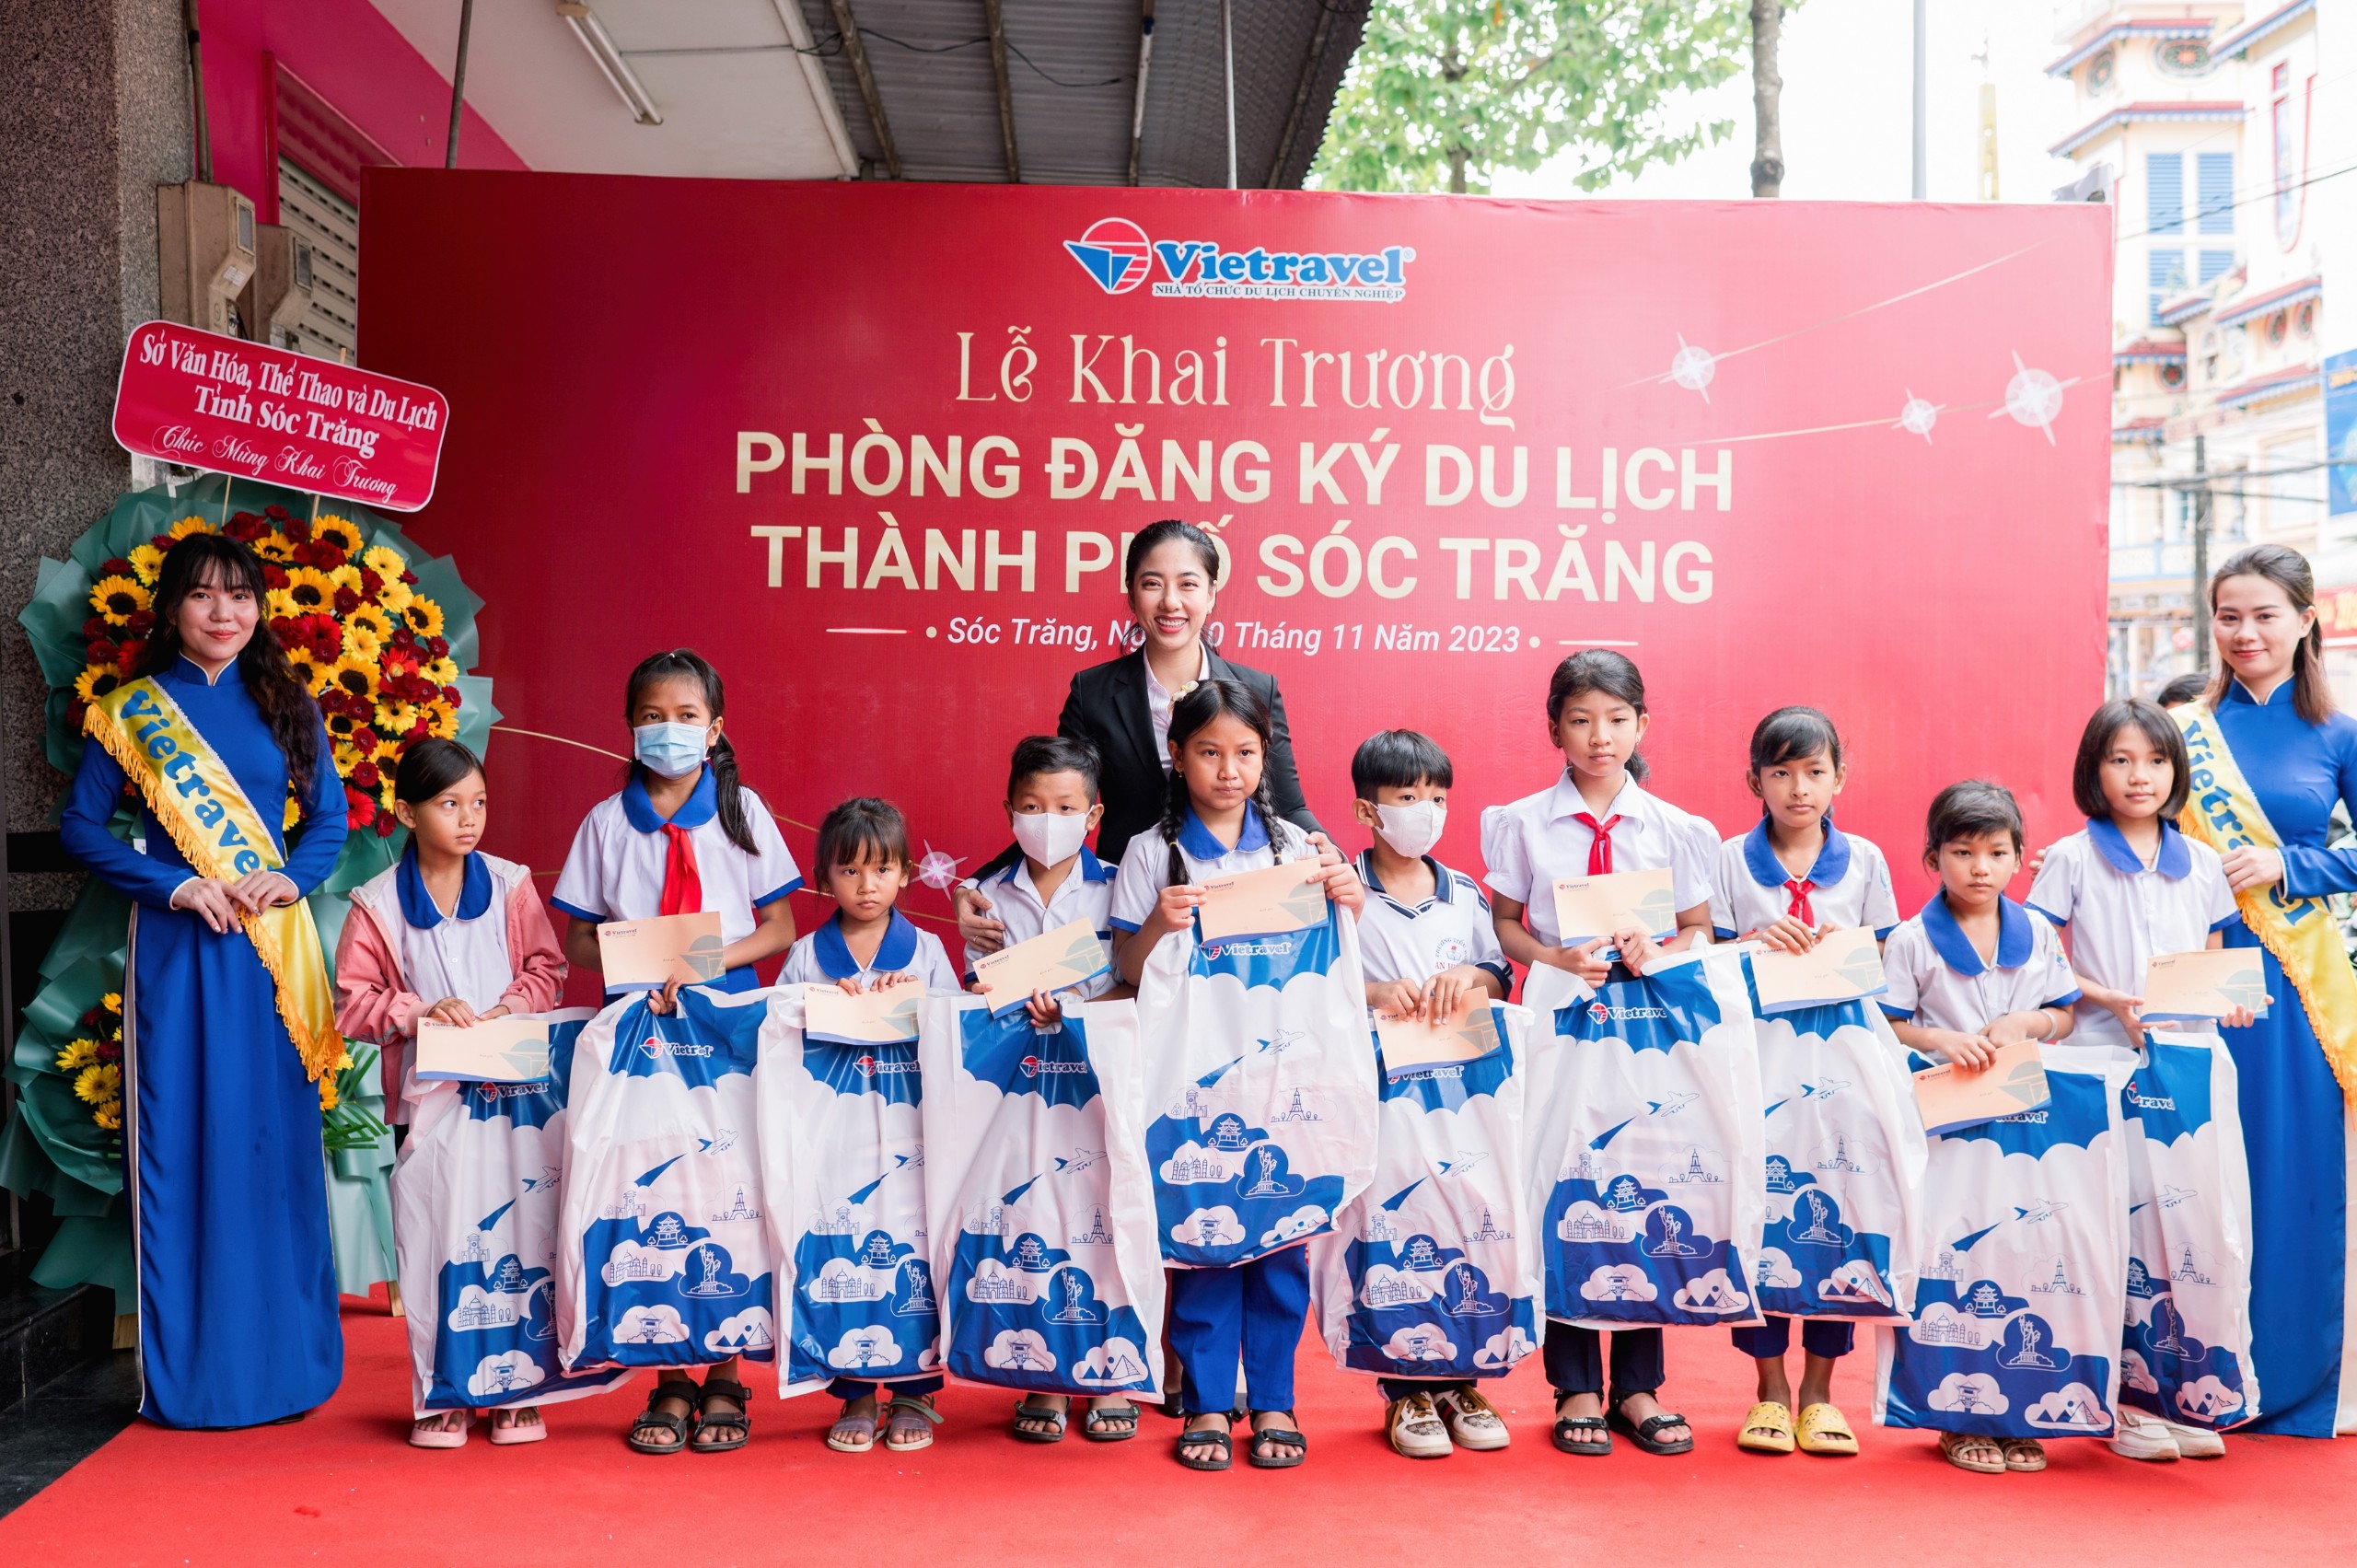 Bà Lê Đình Minh Thy - Giám đốc Vietravel Cần Thơ tặng quà cho các em học sinh có hoàn cảnh khó khăn tại địa phương.